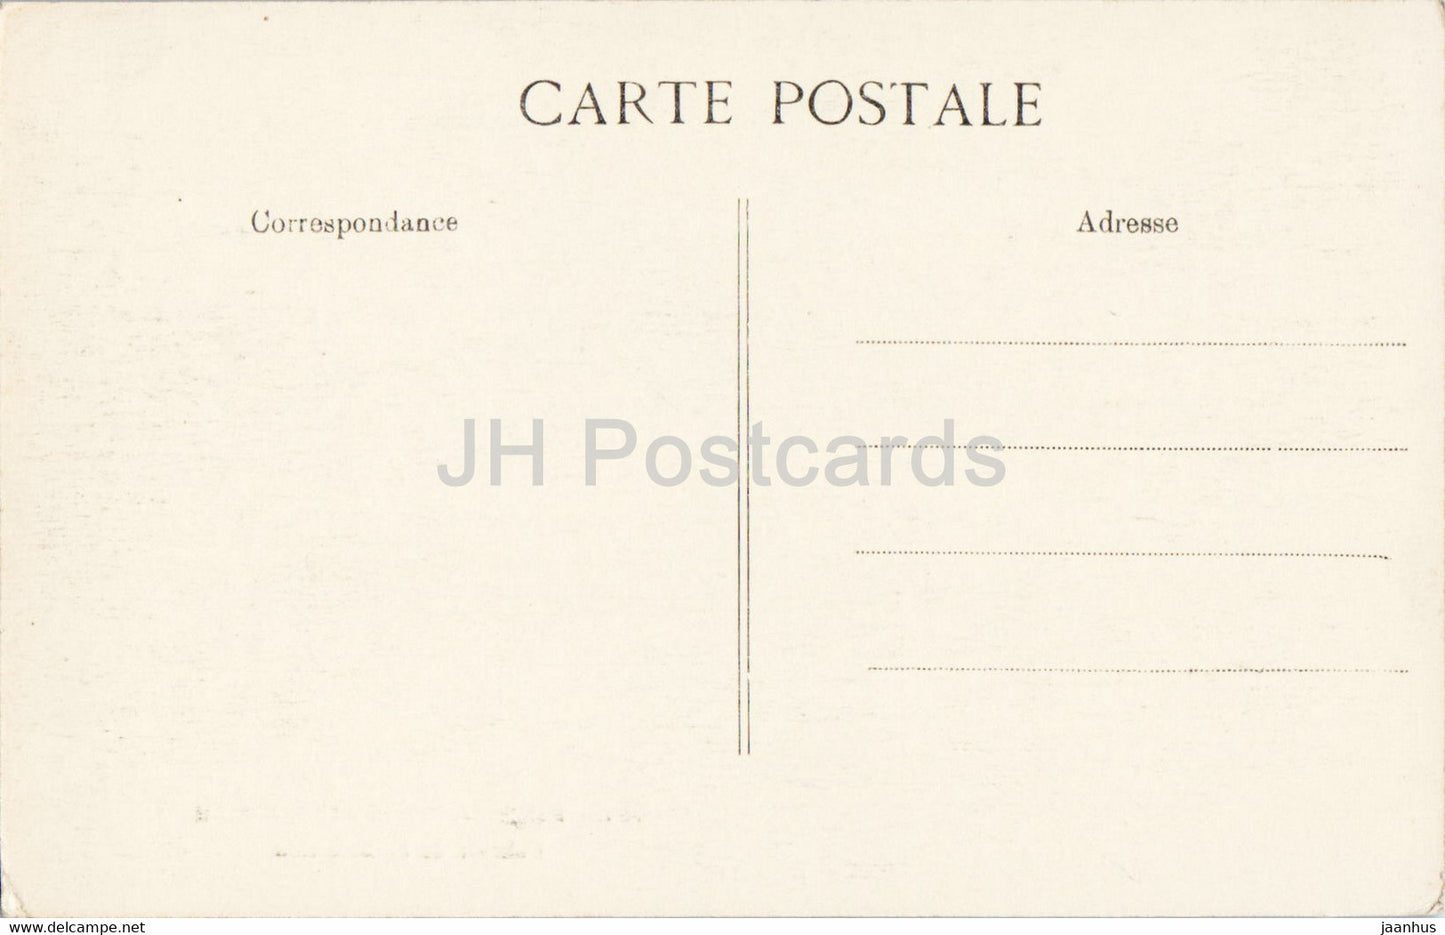 Palais de Fontainebleau - Cabinet de l'Abdication - old postcard - France - unused